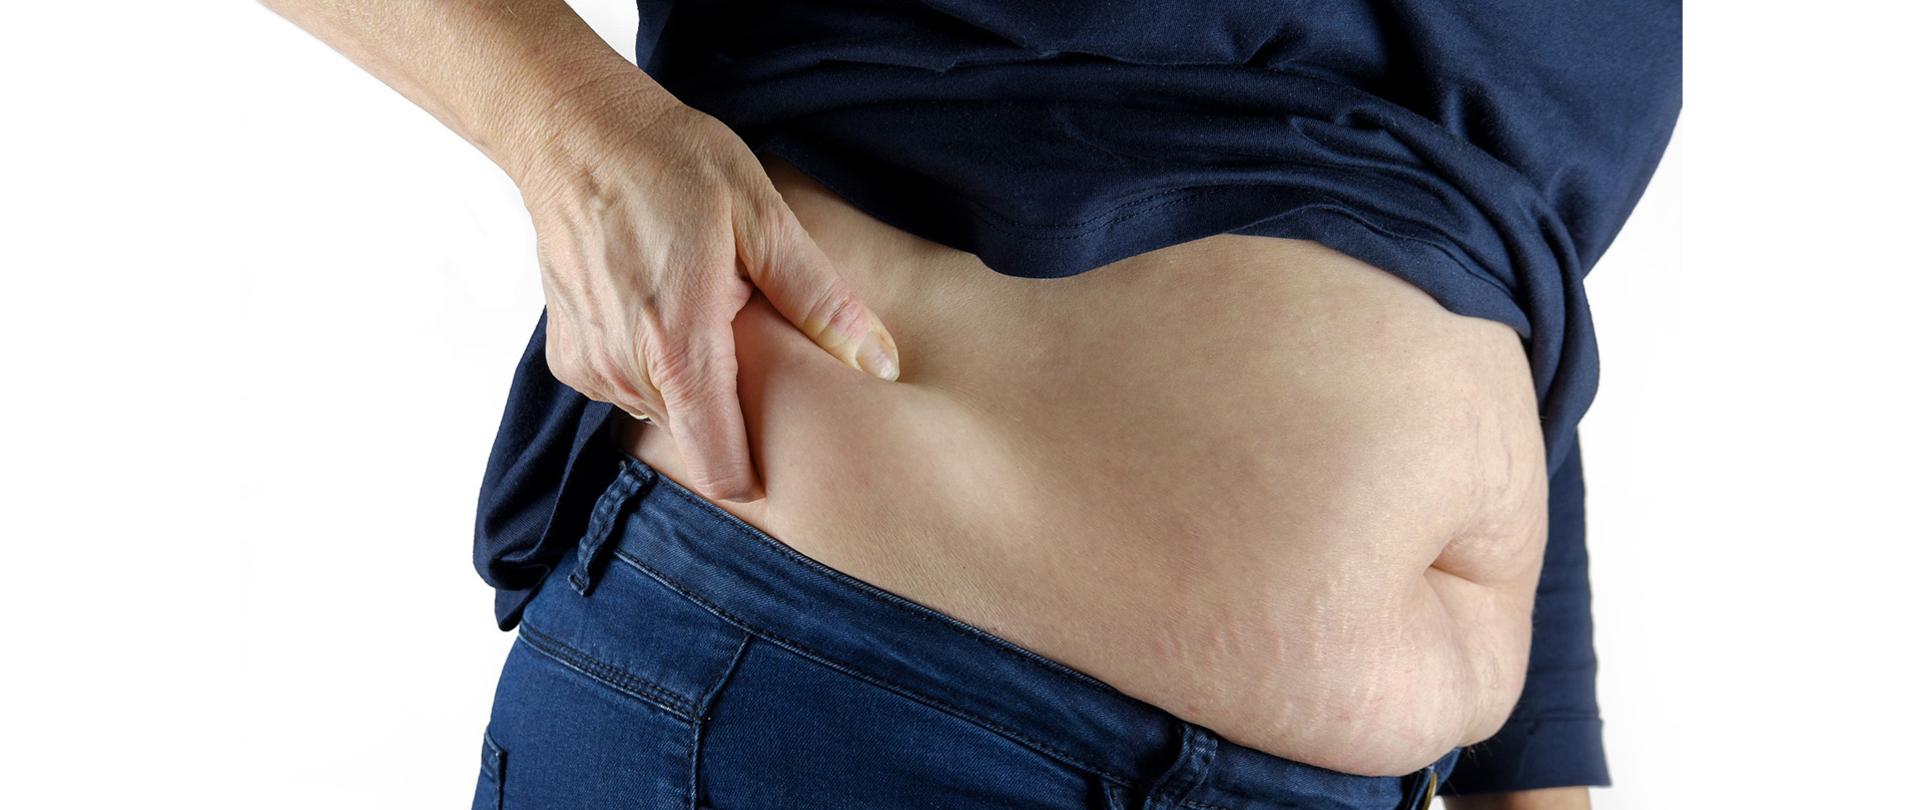 Kobieta mierzy sobie dłonią poziom tkanki tłuszczowej na linii bioder.